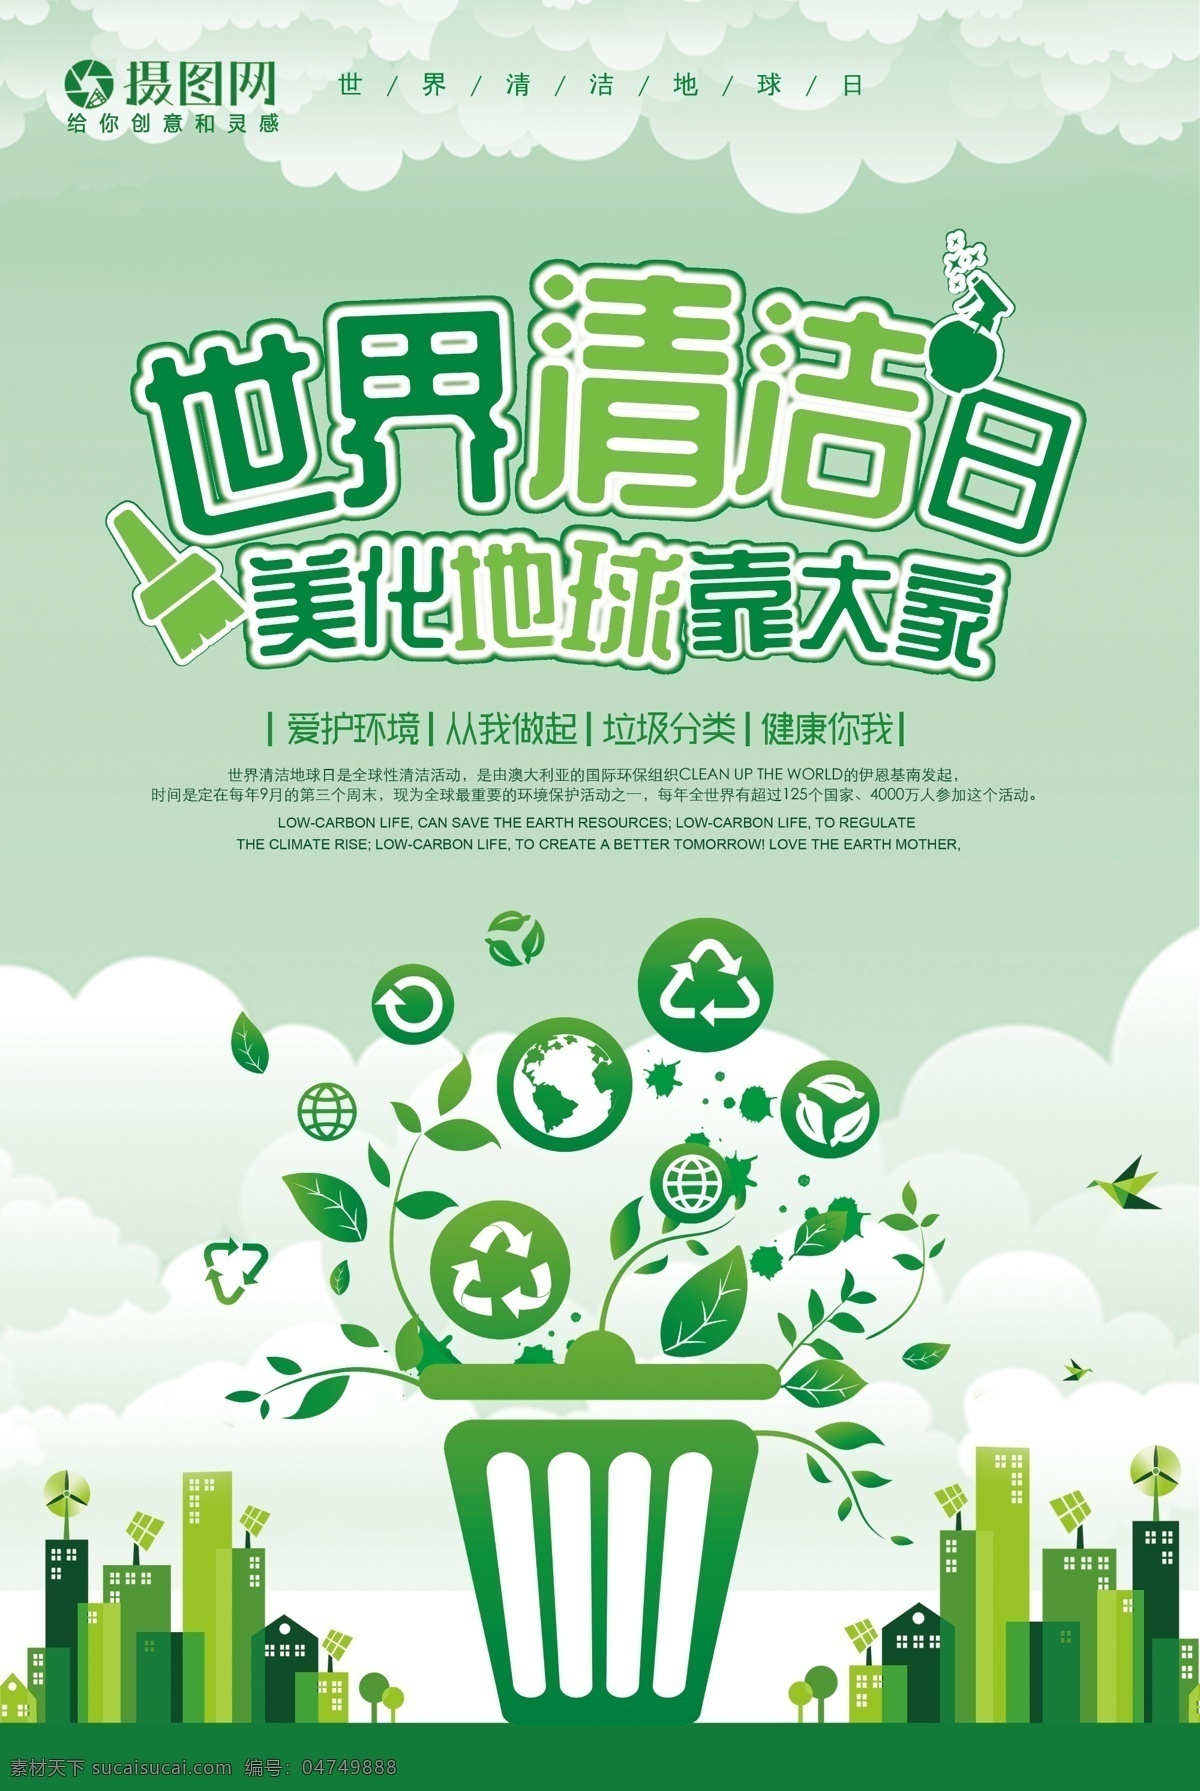 世界 清洁日 公益 海报 世界清洁日 美化 地球 大家 环保 垃圾分类 循环利用 环境清洁 城市环境 爱护环境 从我做起 公益海报